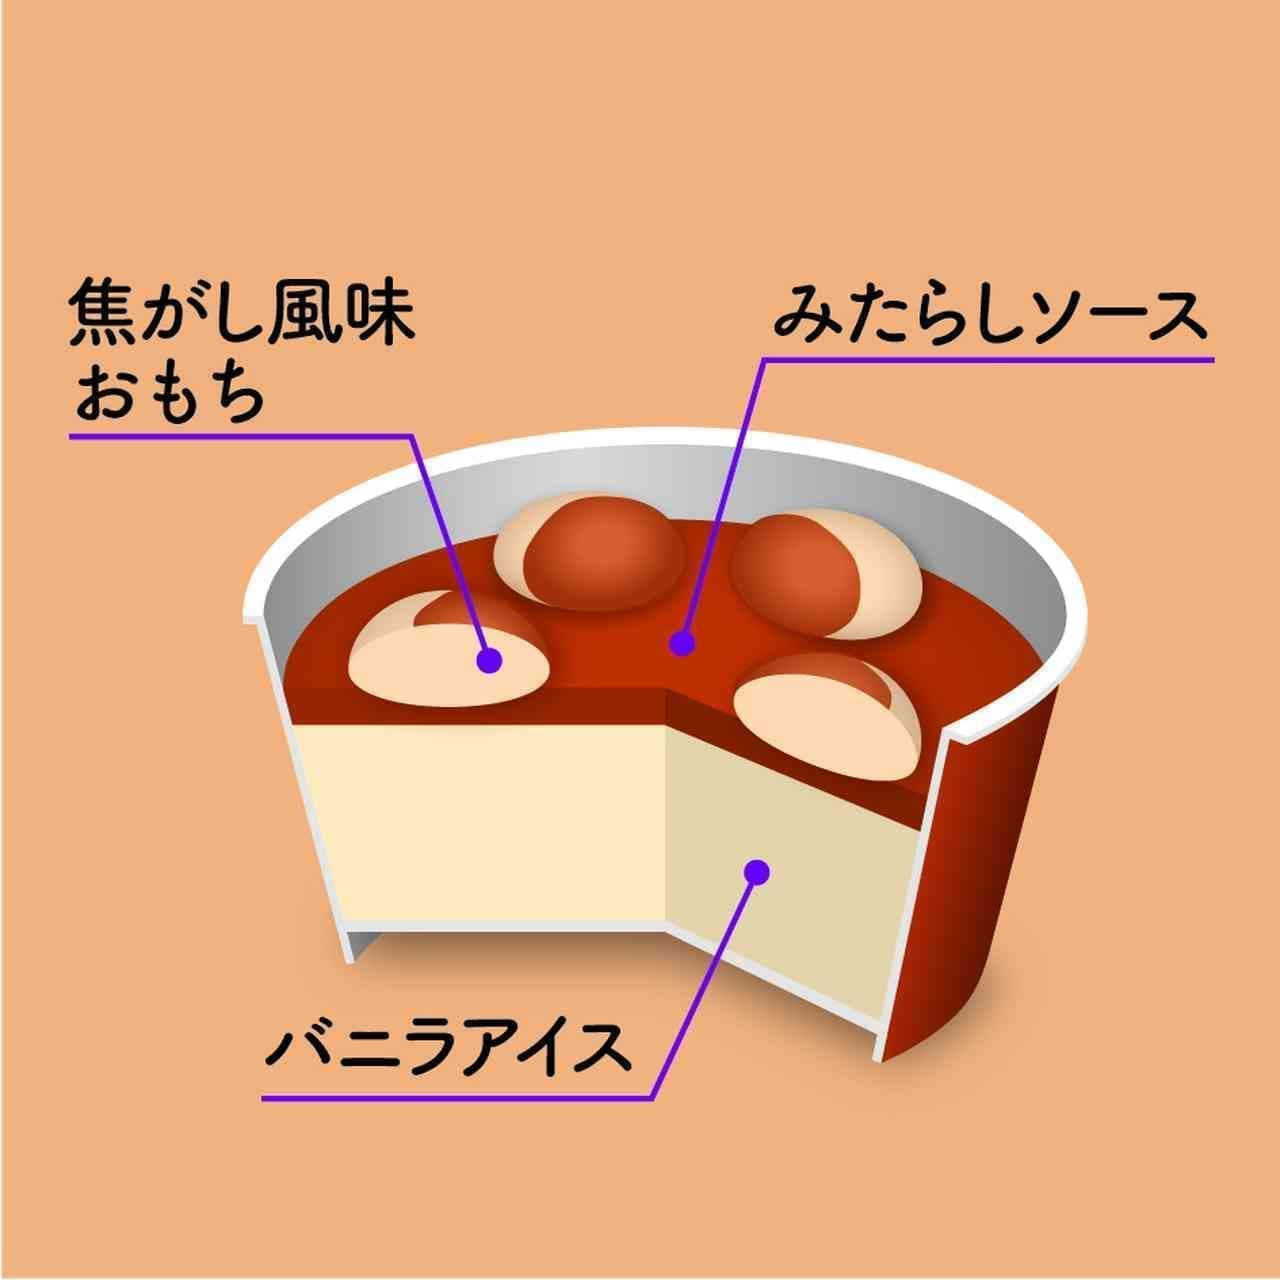 Imuraya "Yawamochi Ice Cream Burnt Mitarashi